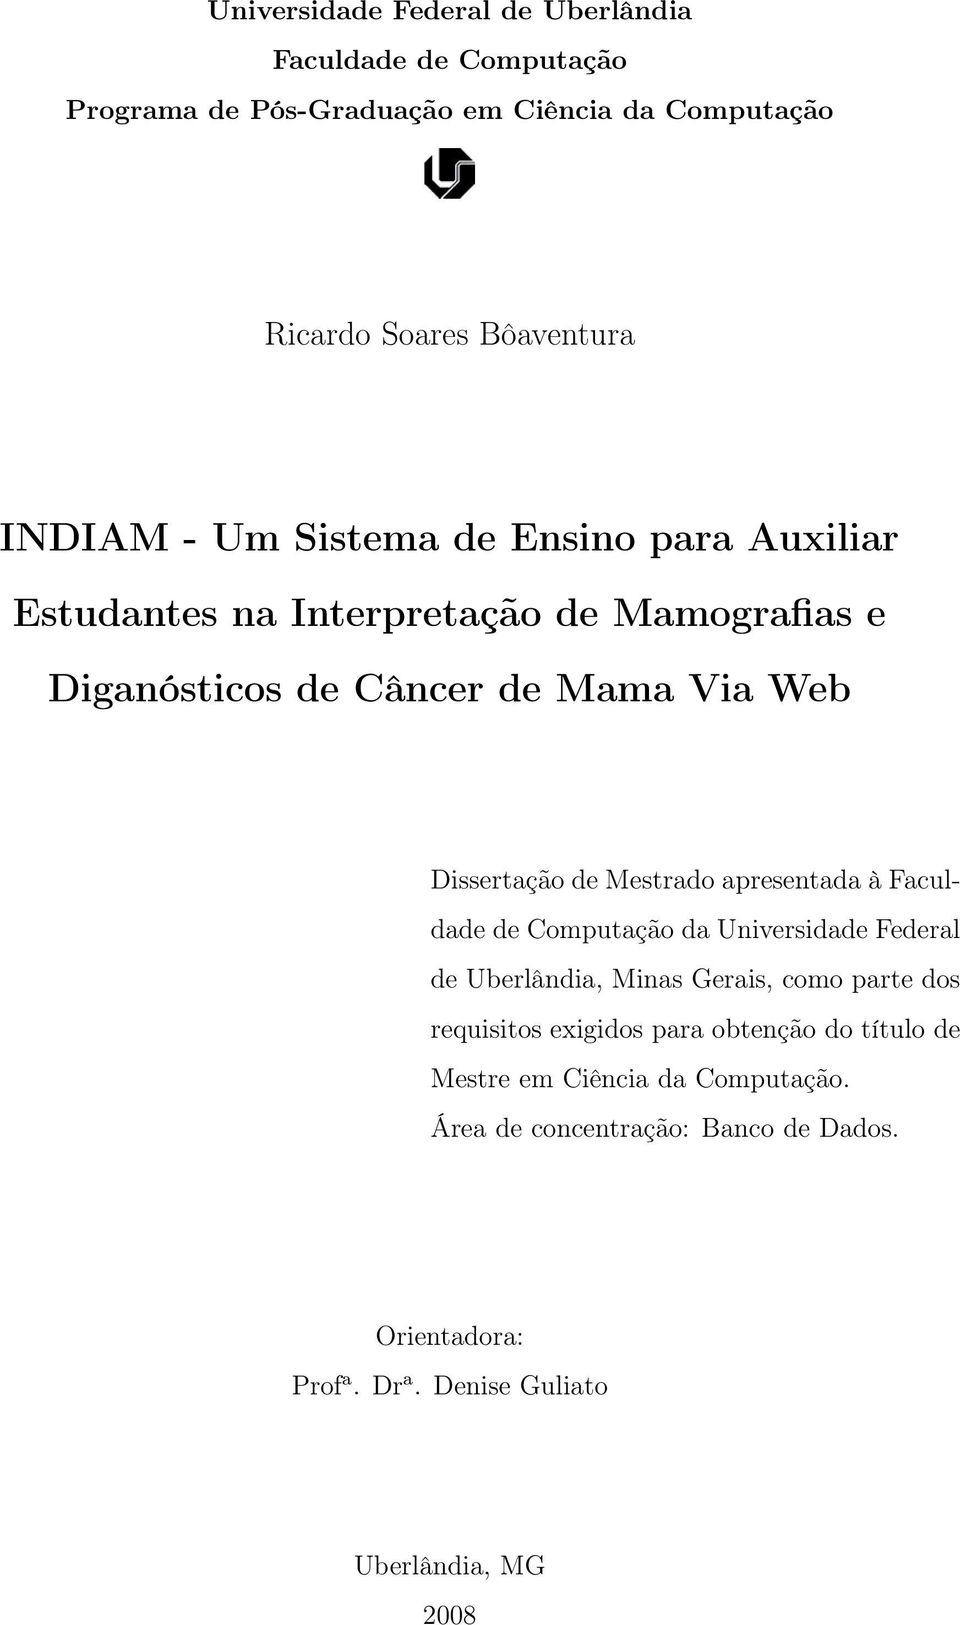 Mestrado apresentada à Faculdade de Computação da Universidade Federal de Uberlândia, Minas Gerais, como parte dos requisitos exigidos para